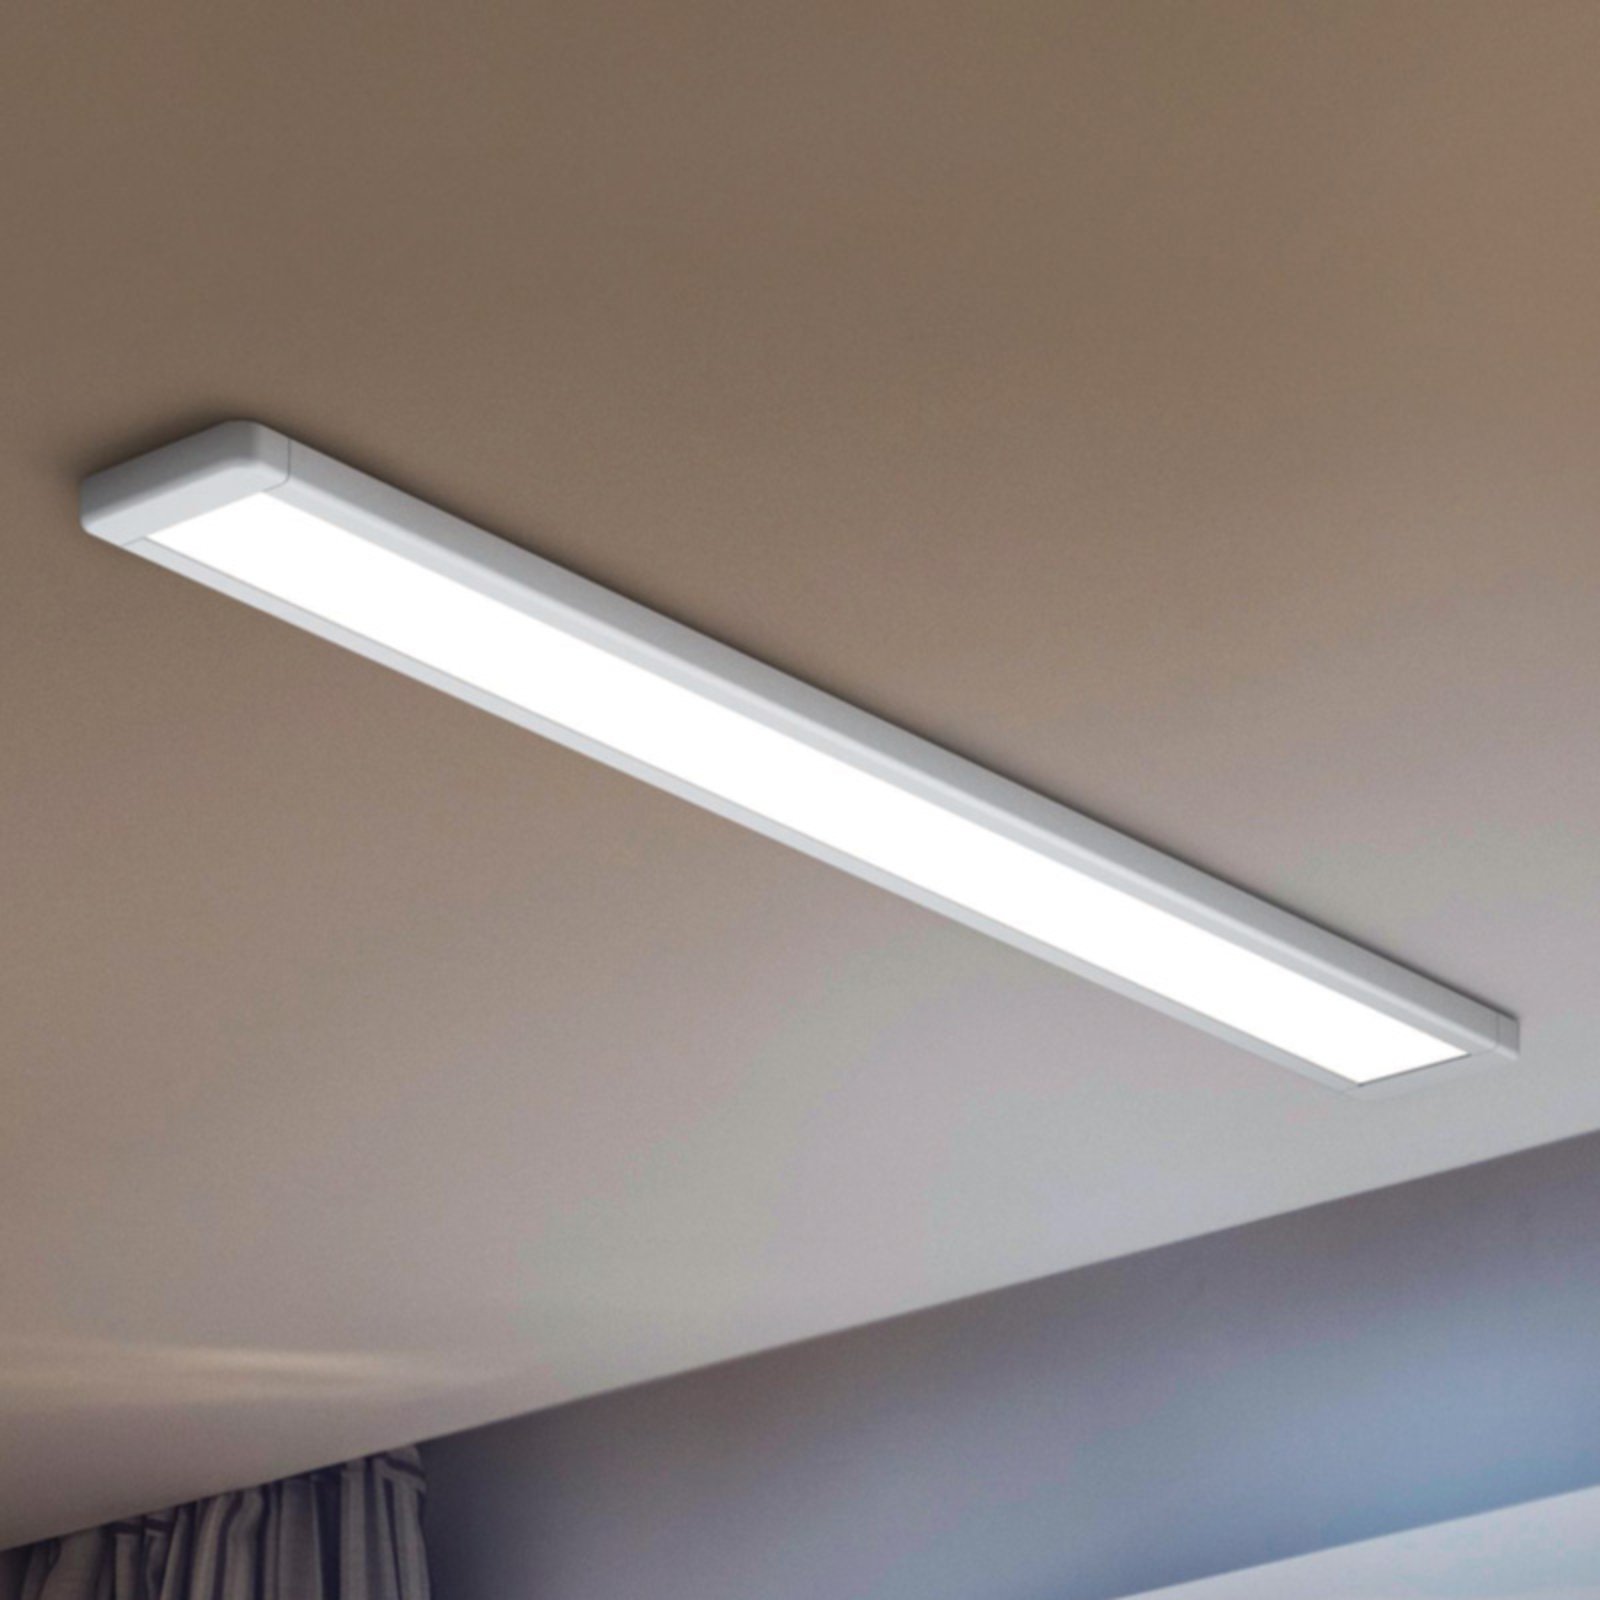 LEDVANCE Office Line LED ceiling light 120 cm